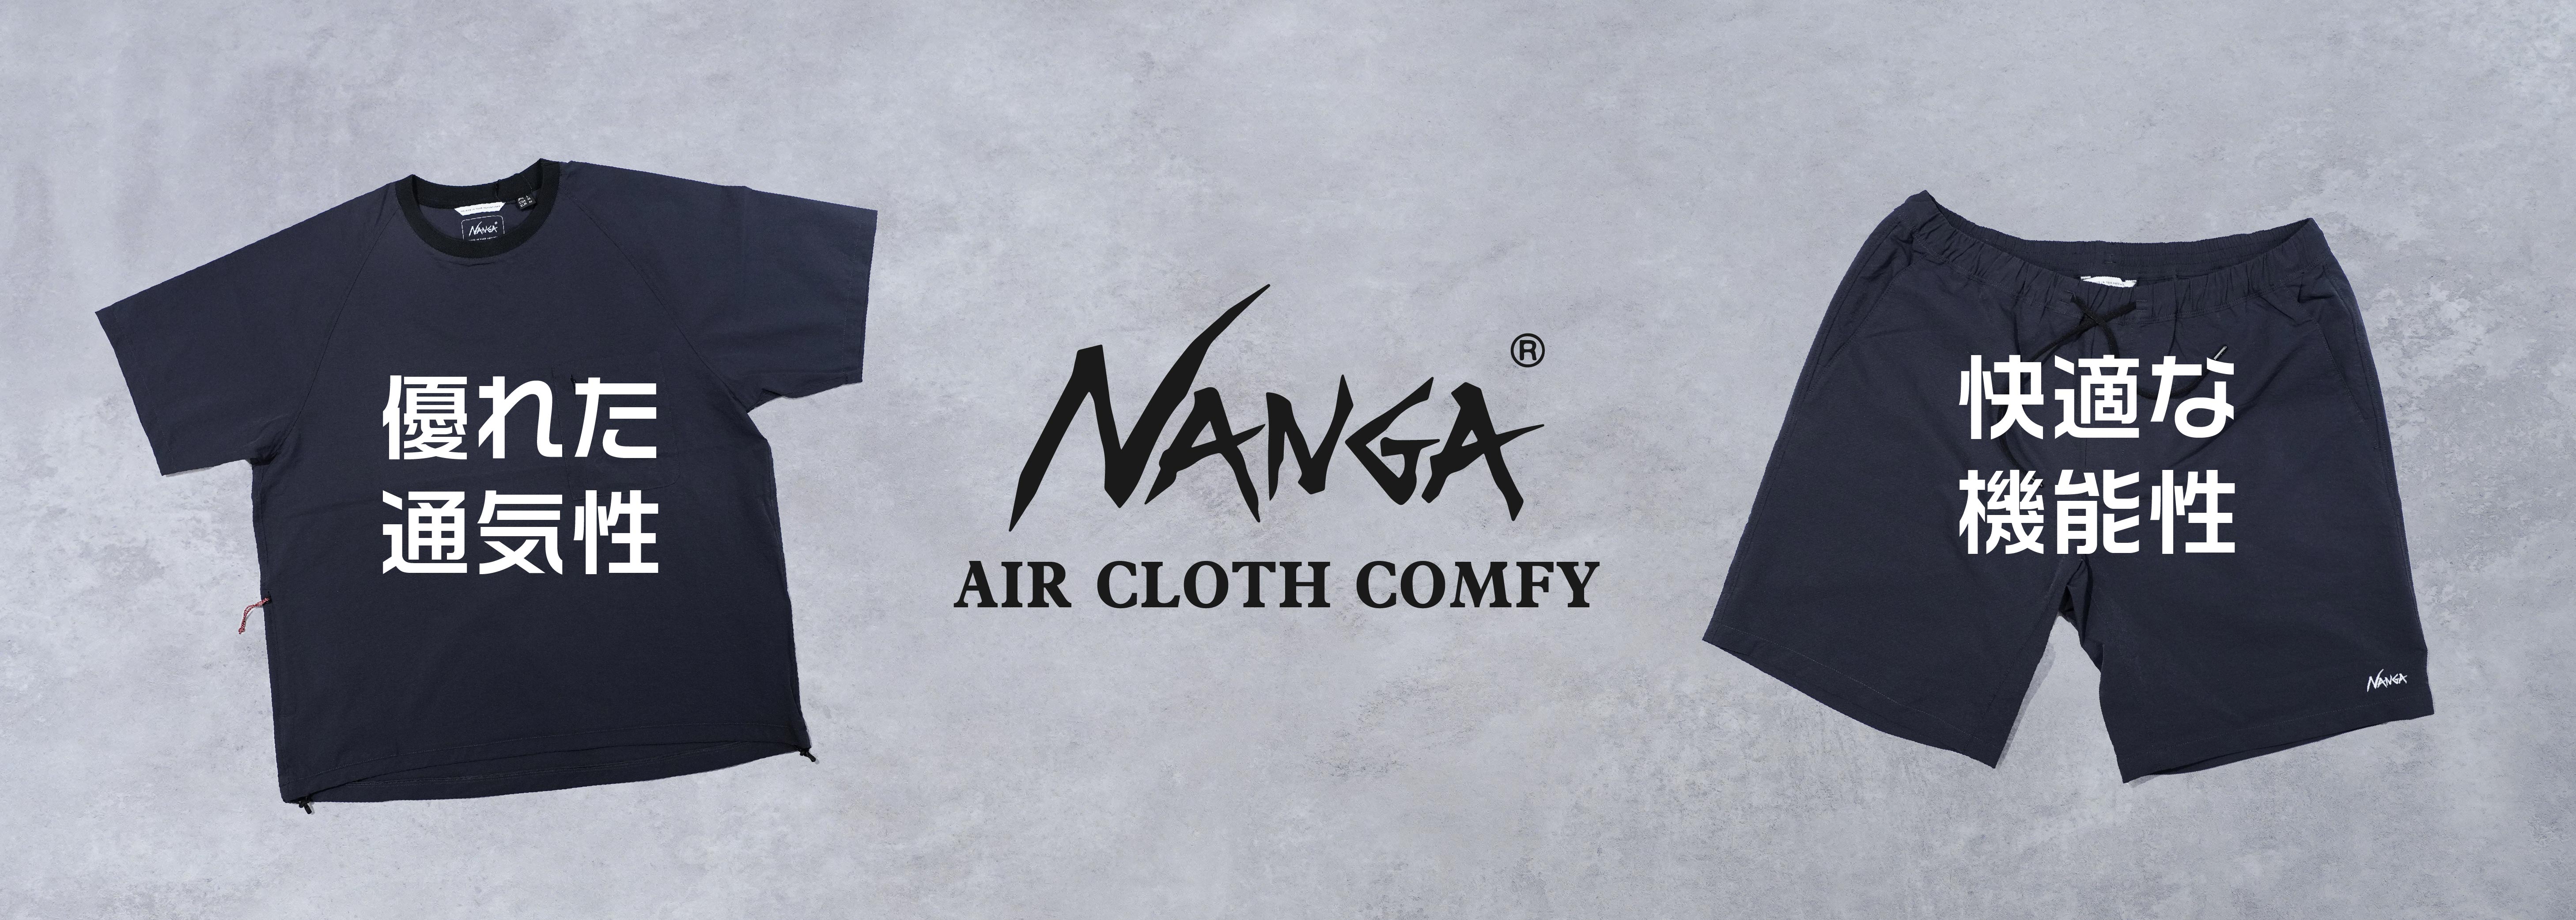 NANGA AIR CLOTH COMFY SERIES